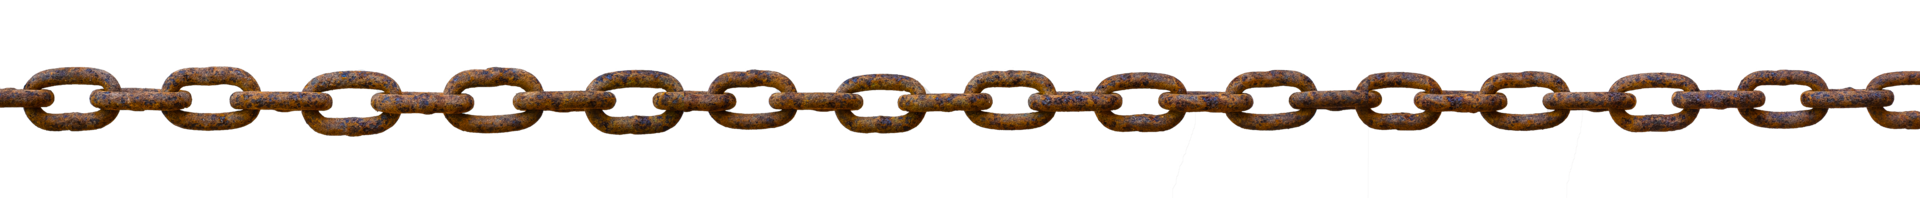 antiguo oxidado metal cadena metido en un Derecho línea png